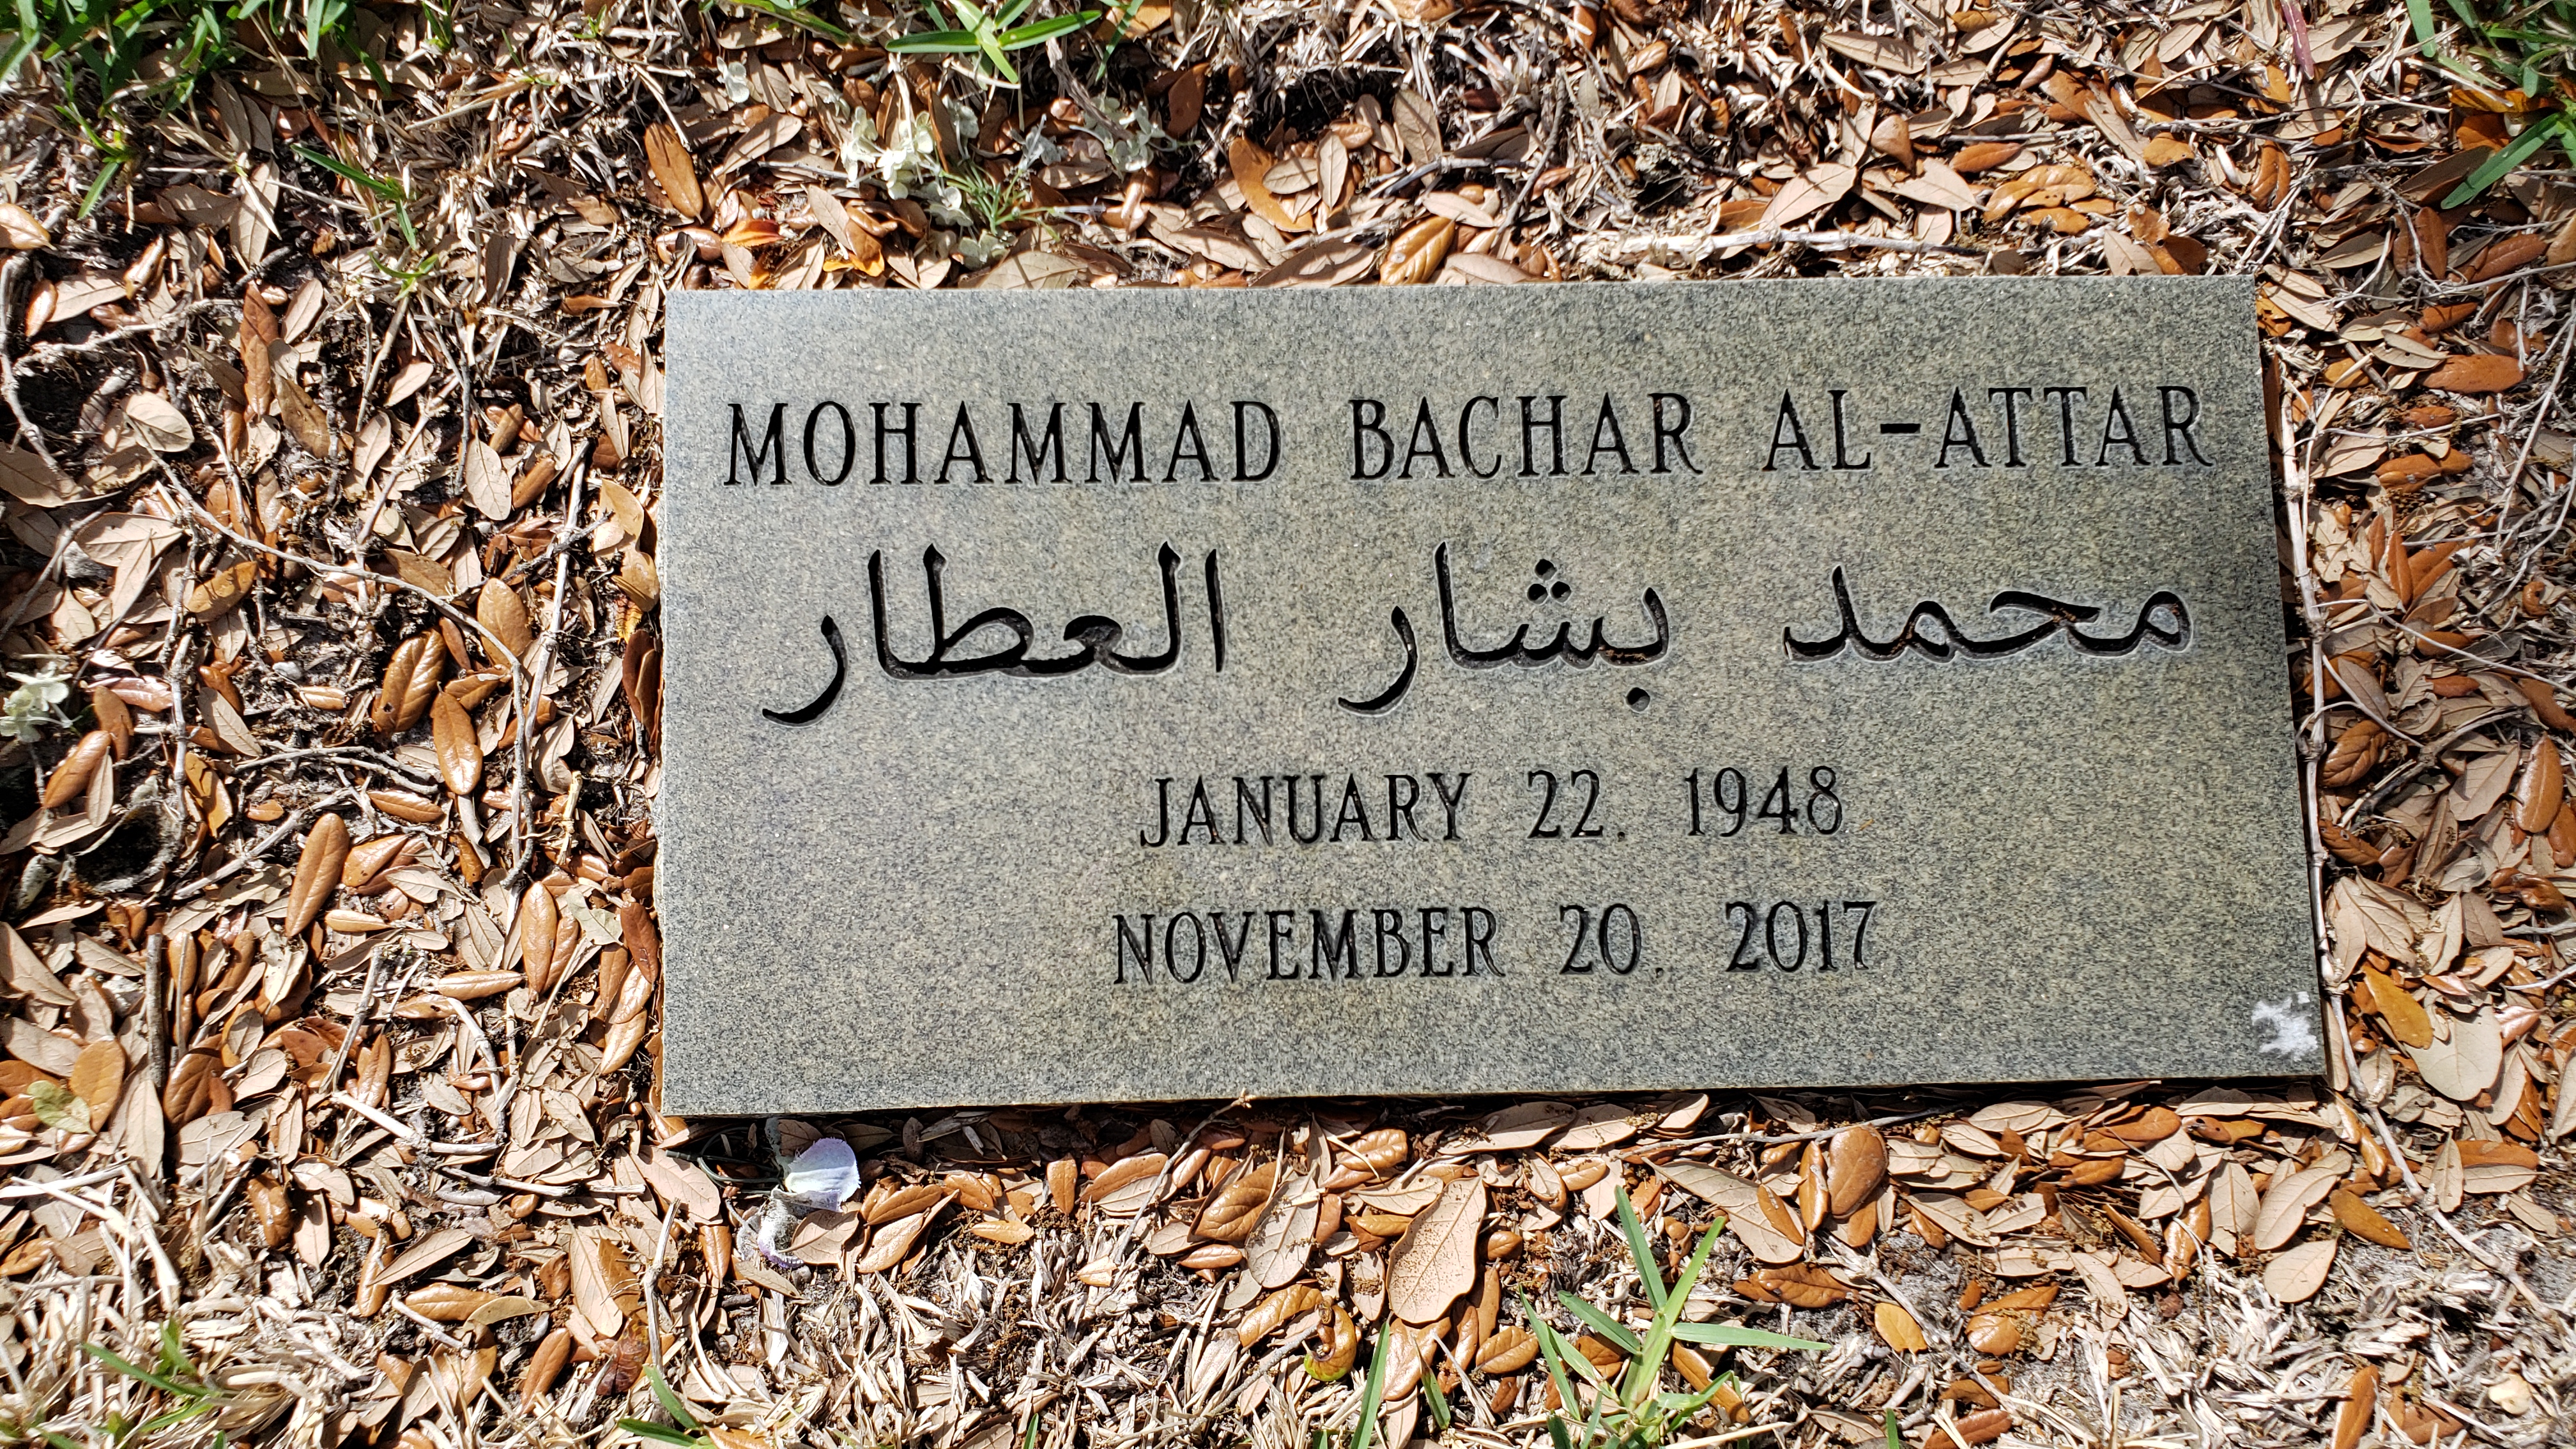 Mohammad Bachar Al-Attar